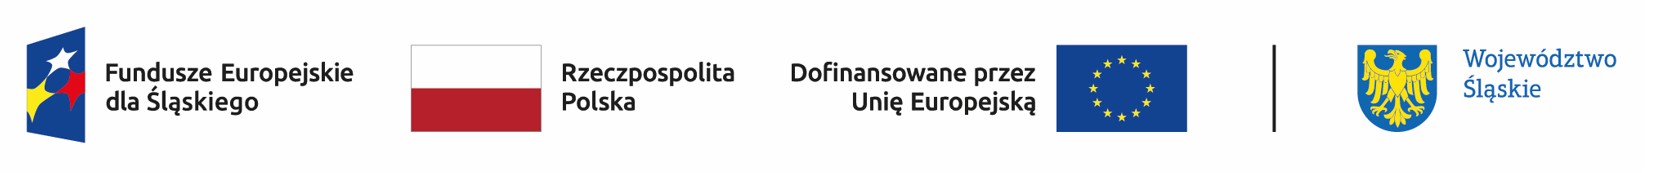 Logo Fundusze Europejskie Rzeczpospolita Polska Unia Europejska Województwo Śląskie